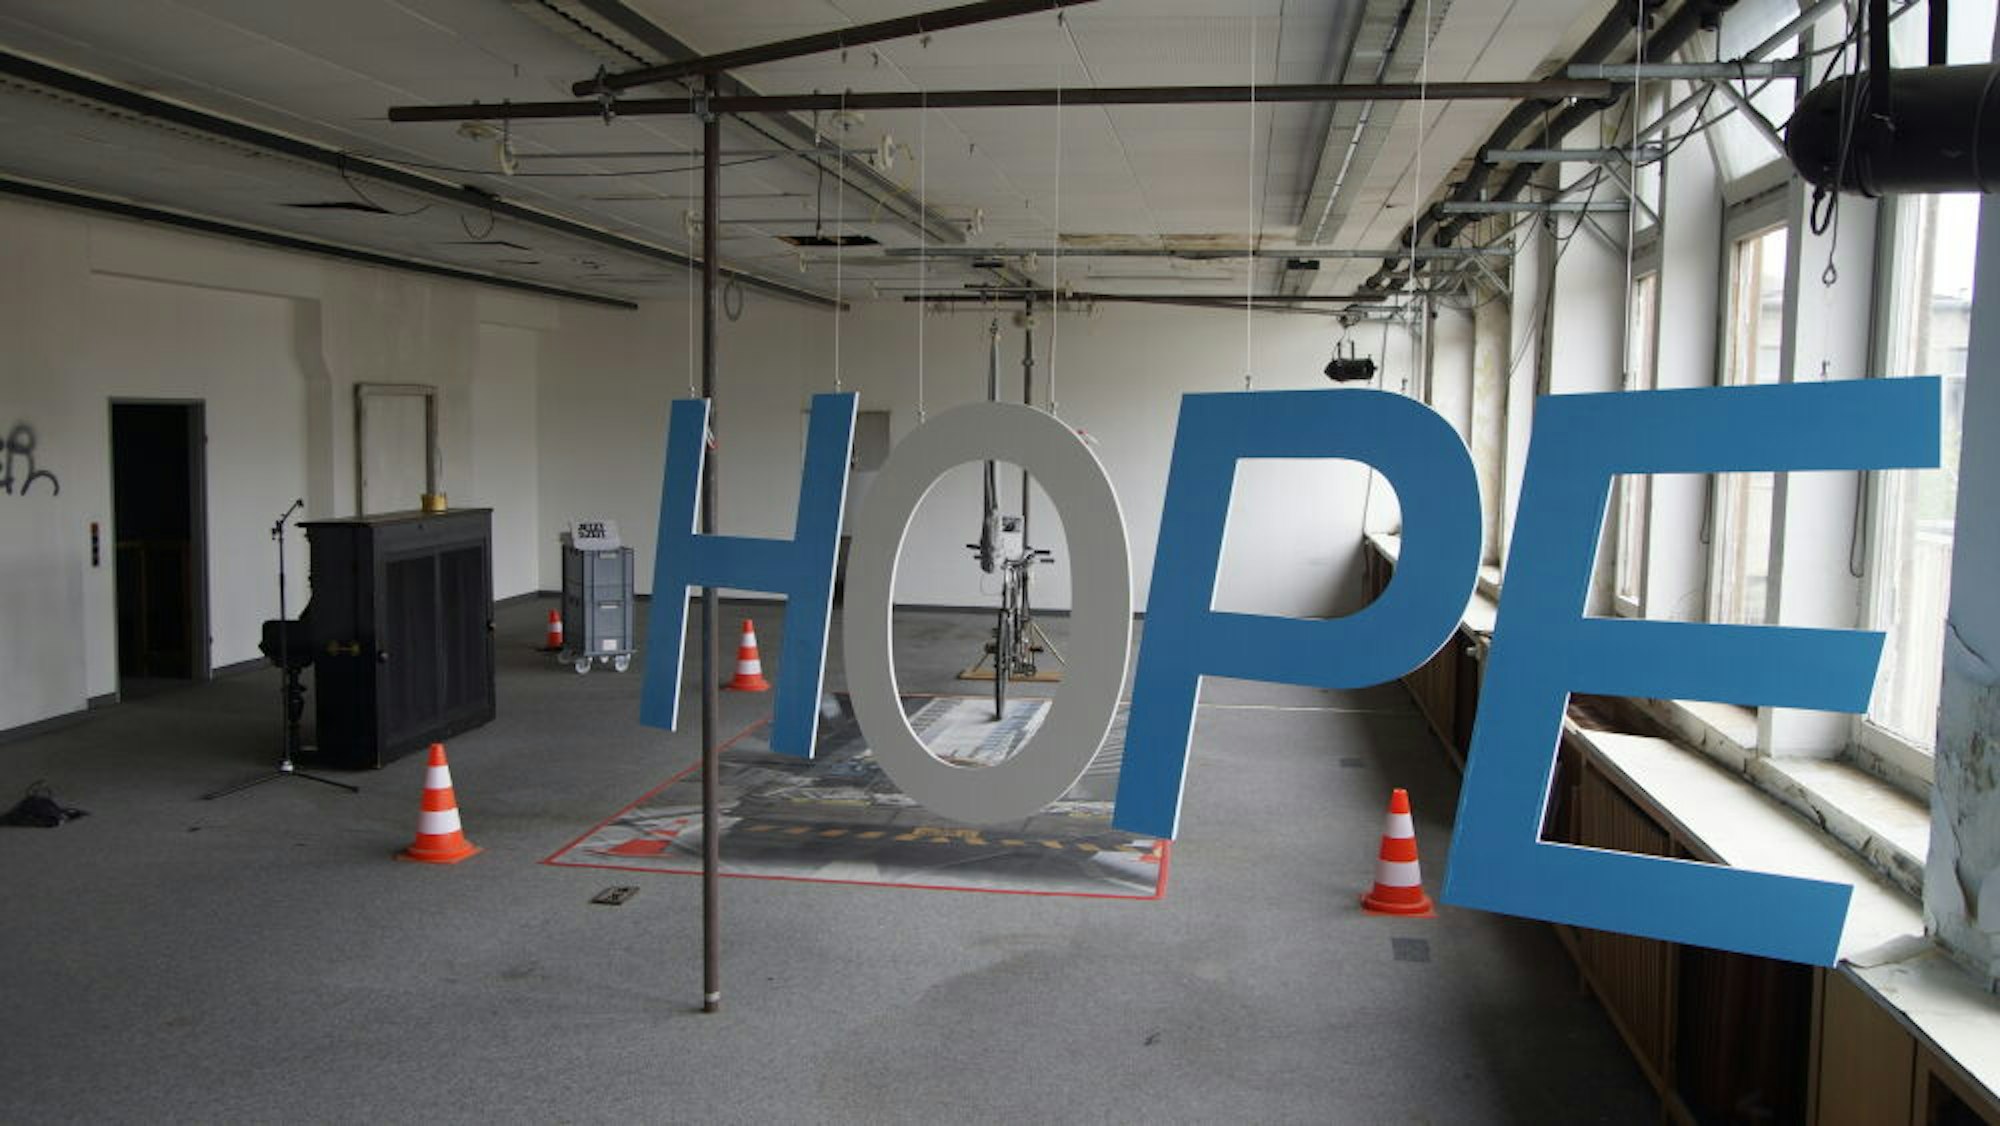 Im August steht ein Festival unter dem Motto „Hope“ (Hoffnung) an.